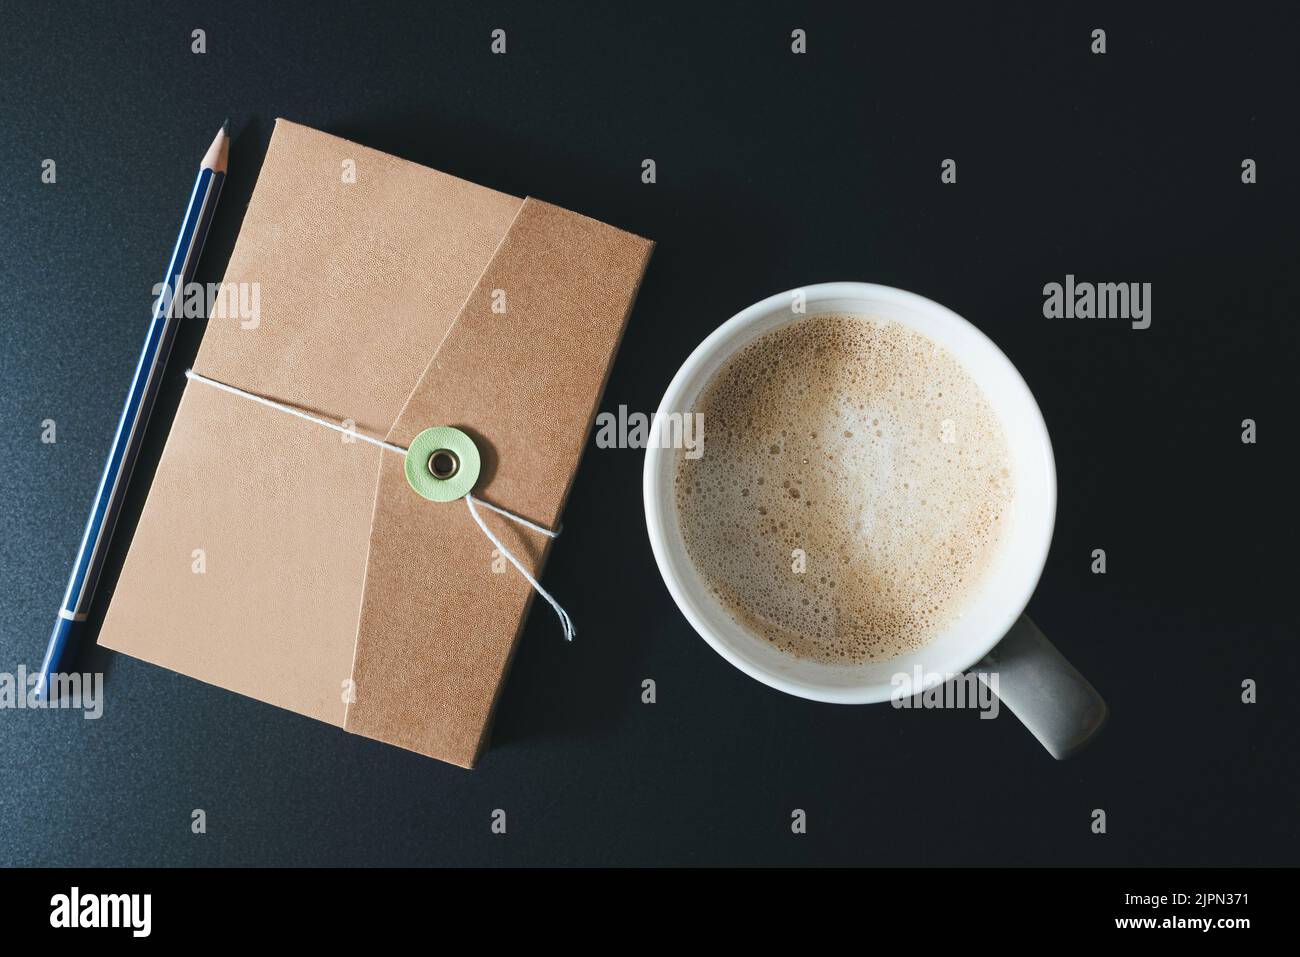 vista dall'alto verso il basso del diario, della matita e della tazza di caffè sul tavolo scuro Foto Stock